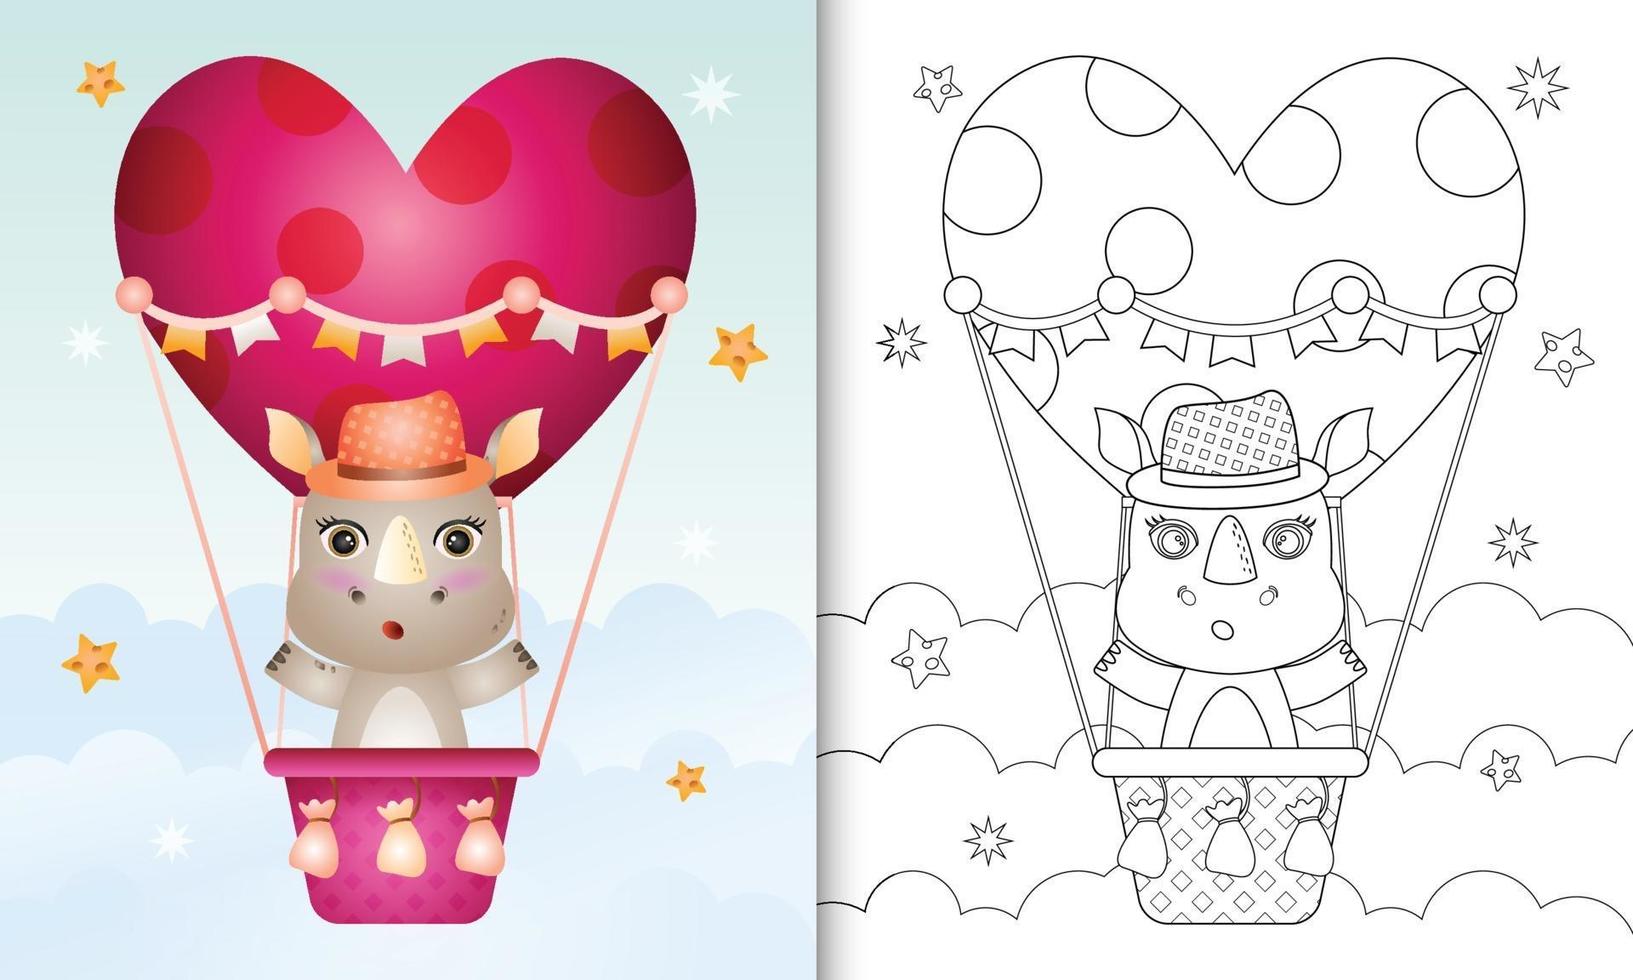 Malbuch für Kinder mit einem niedlichen Nashornmann am Heißluftballon lieben themenorientierten Valentinstag vektor